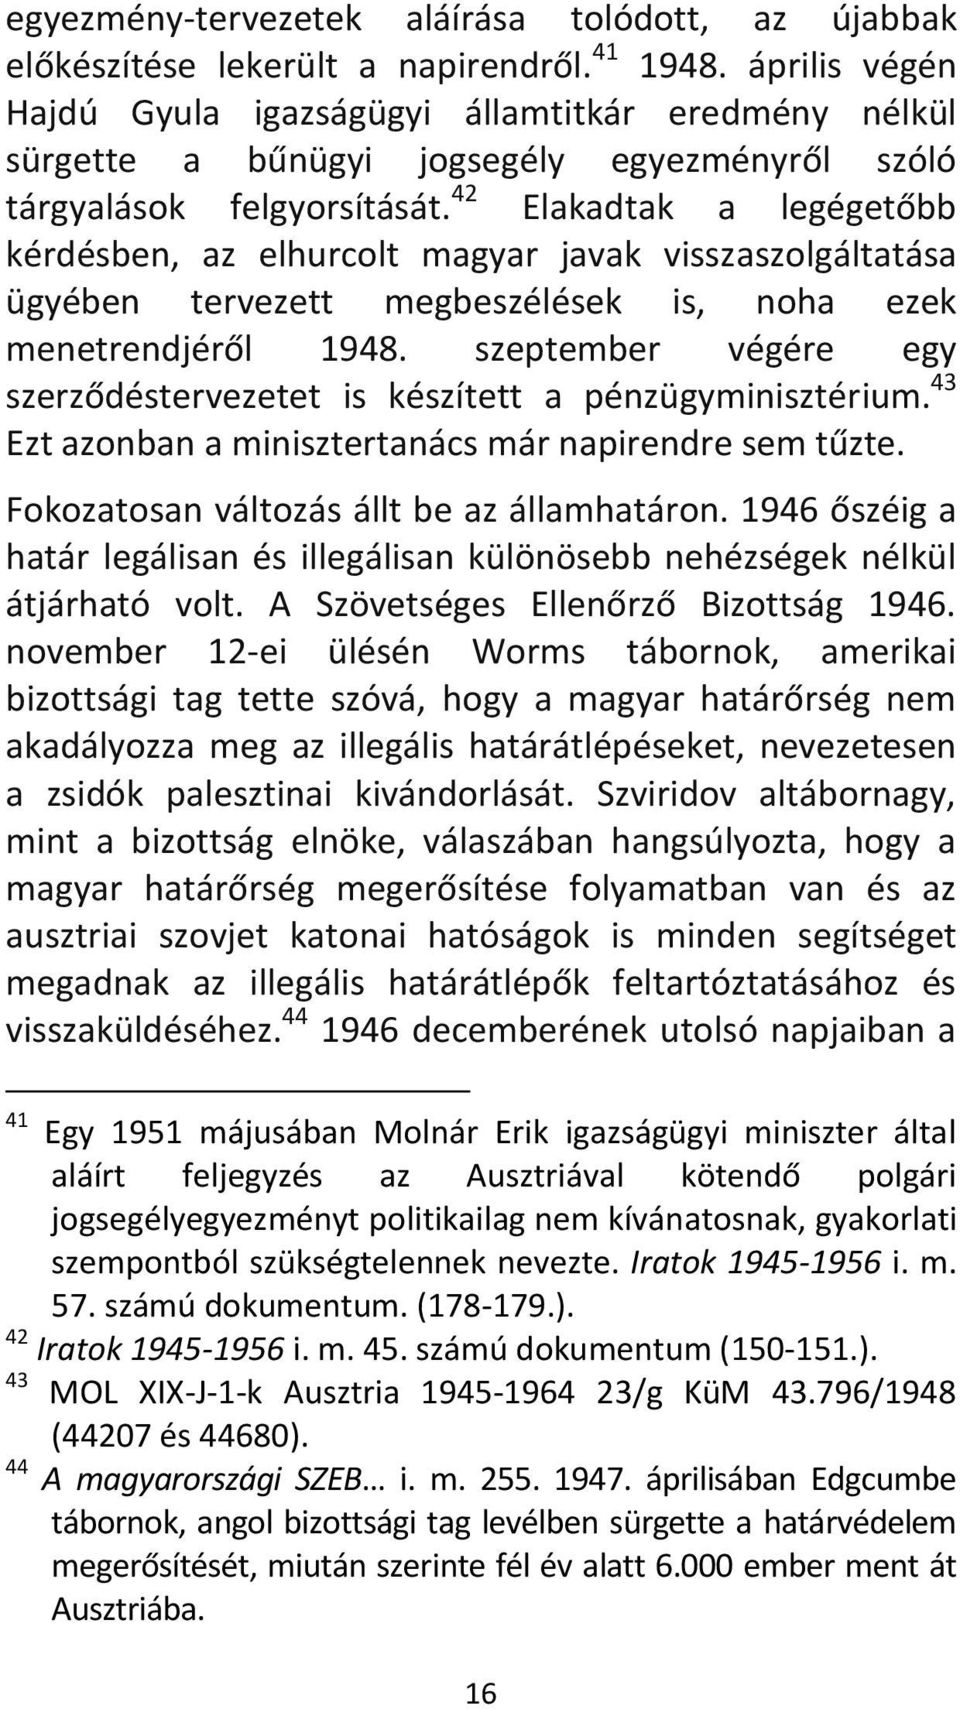 42 Elakadtak a legégetőbb kérdésben, az elhurcolt magyar javak visszaszolgáltatása ügyében tervezett megbeszélések is, noha ezek menetrendjéről 1948.